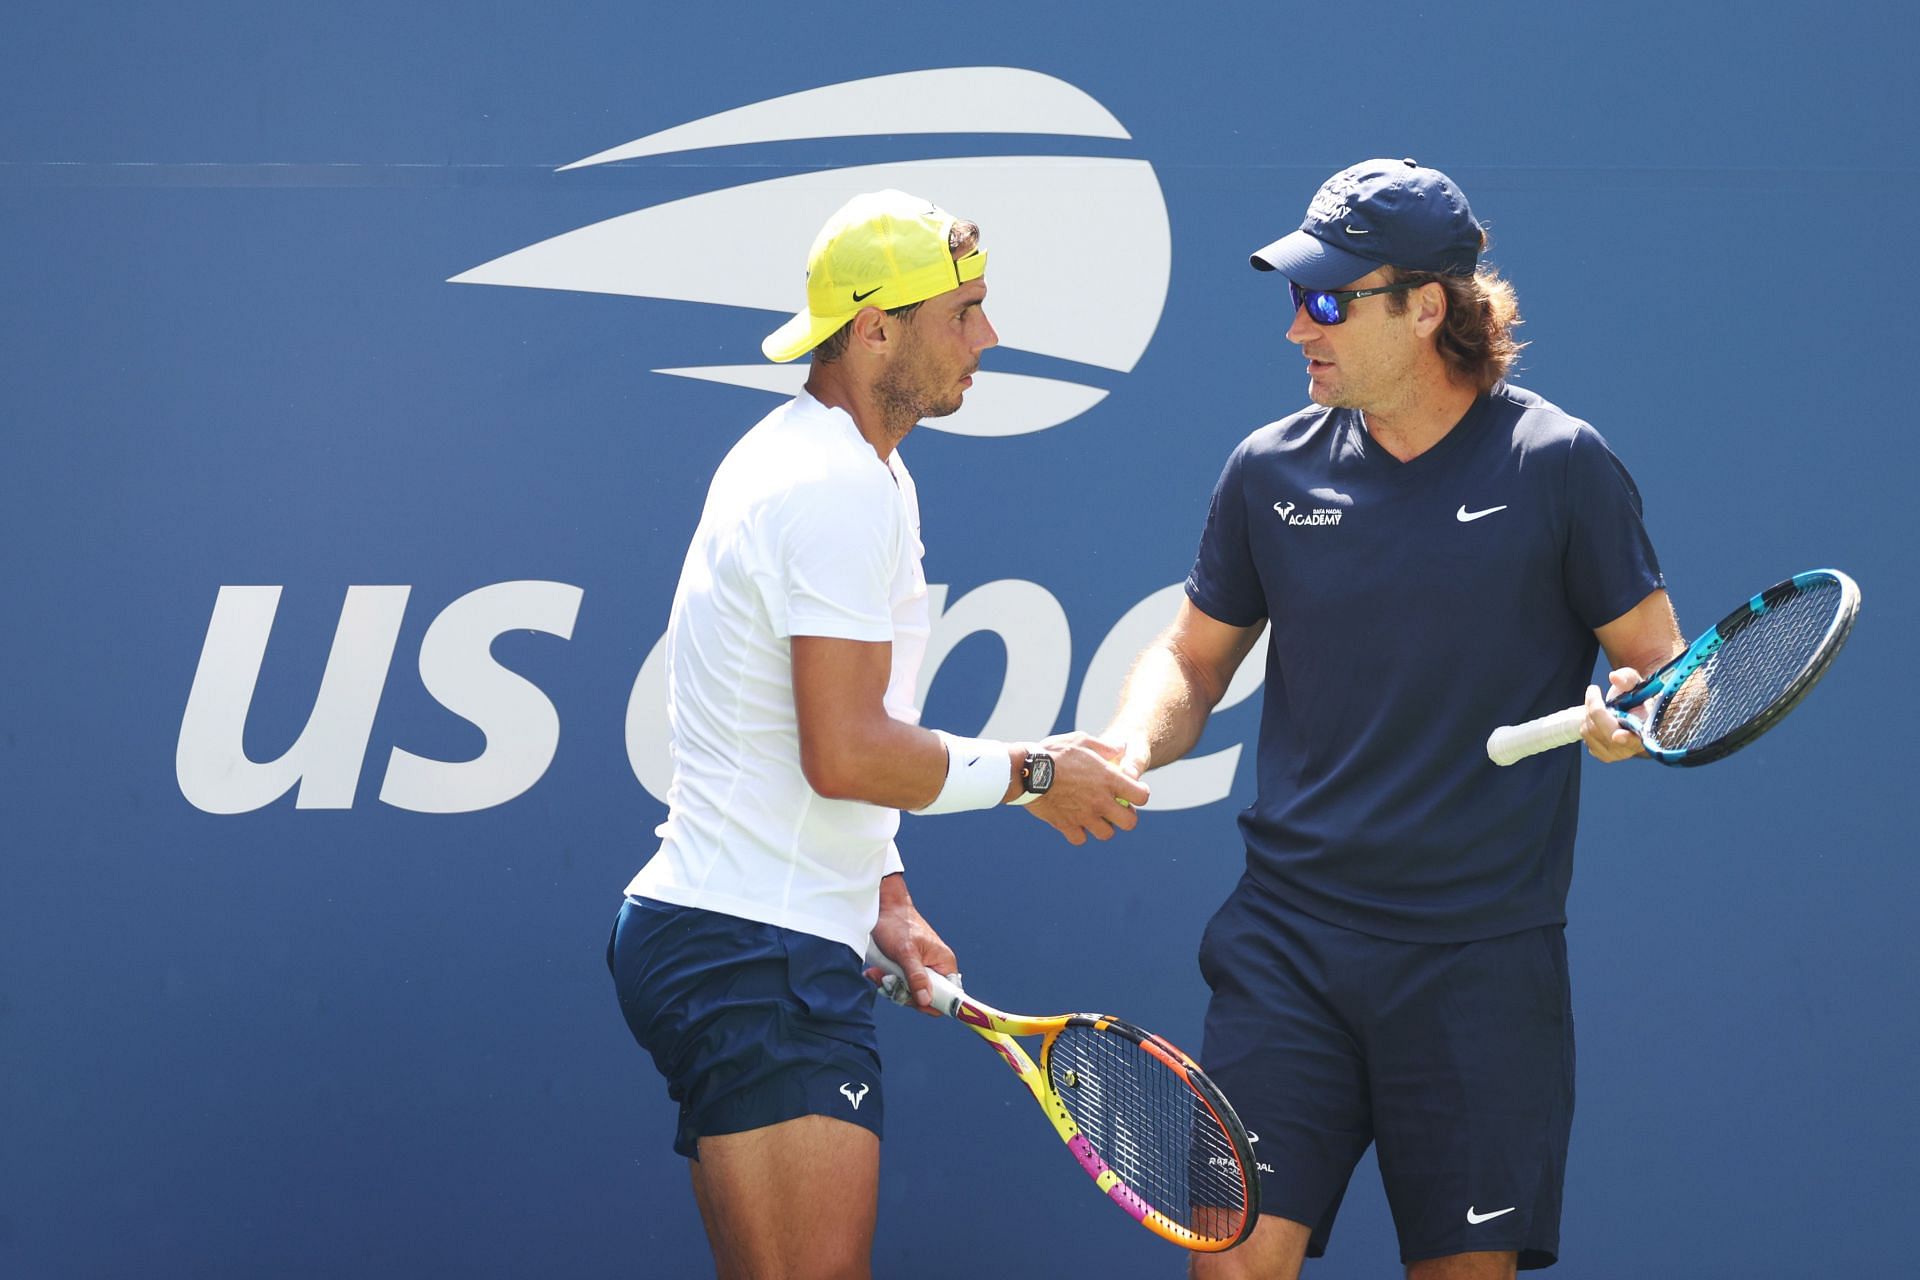 Rafael Nadal and Carlos Moya at the 2022 US Open